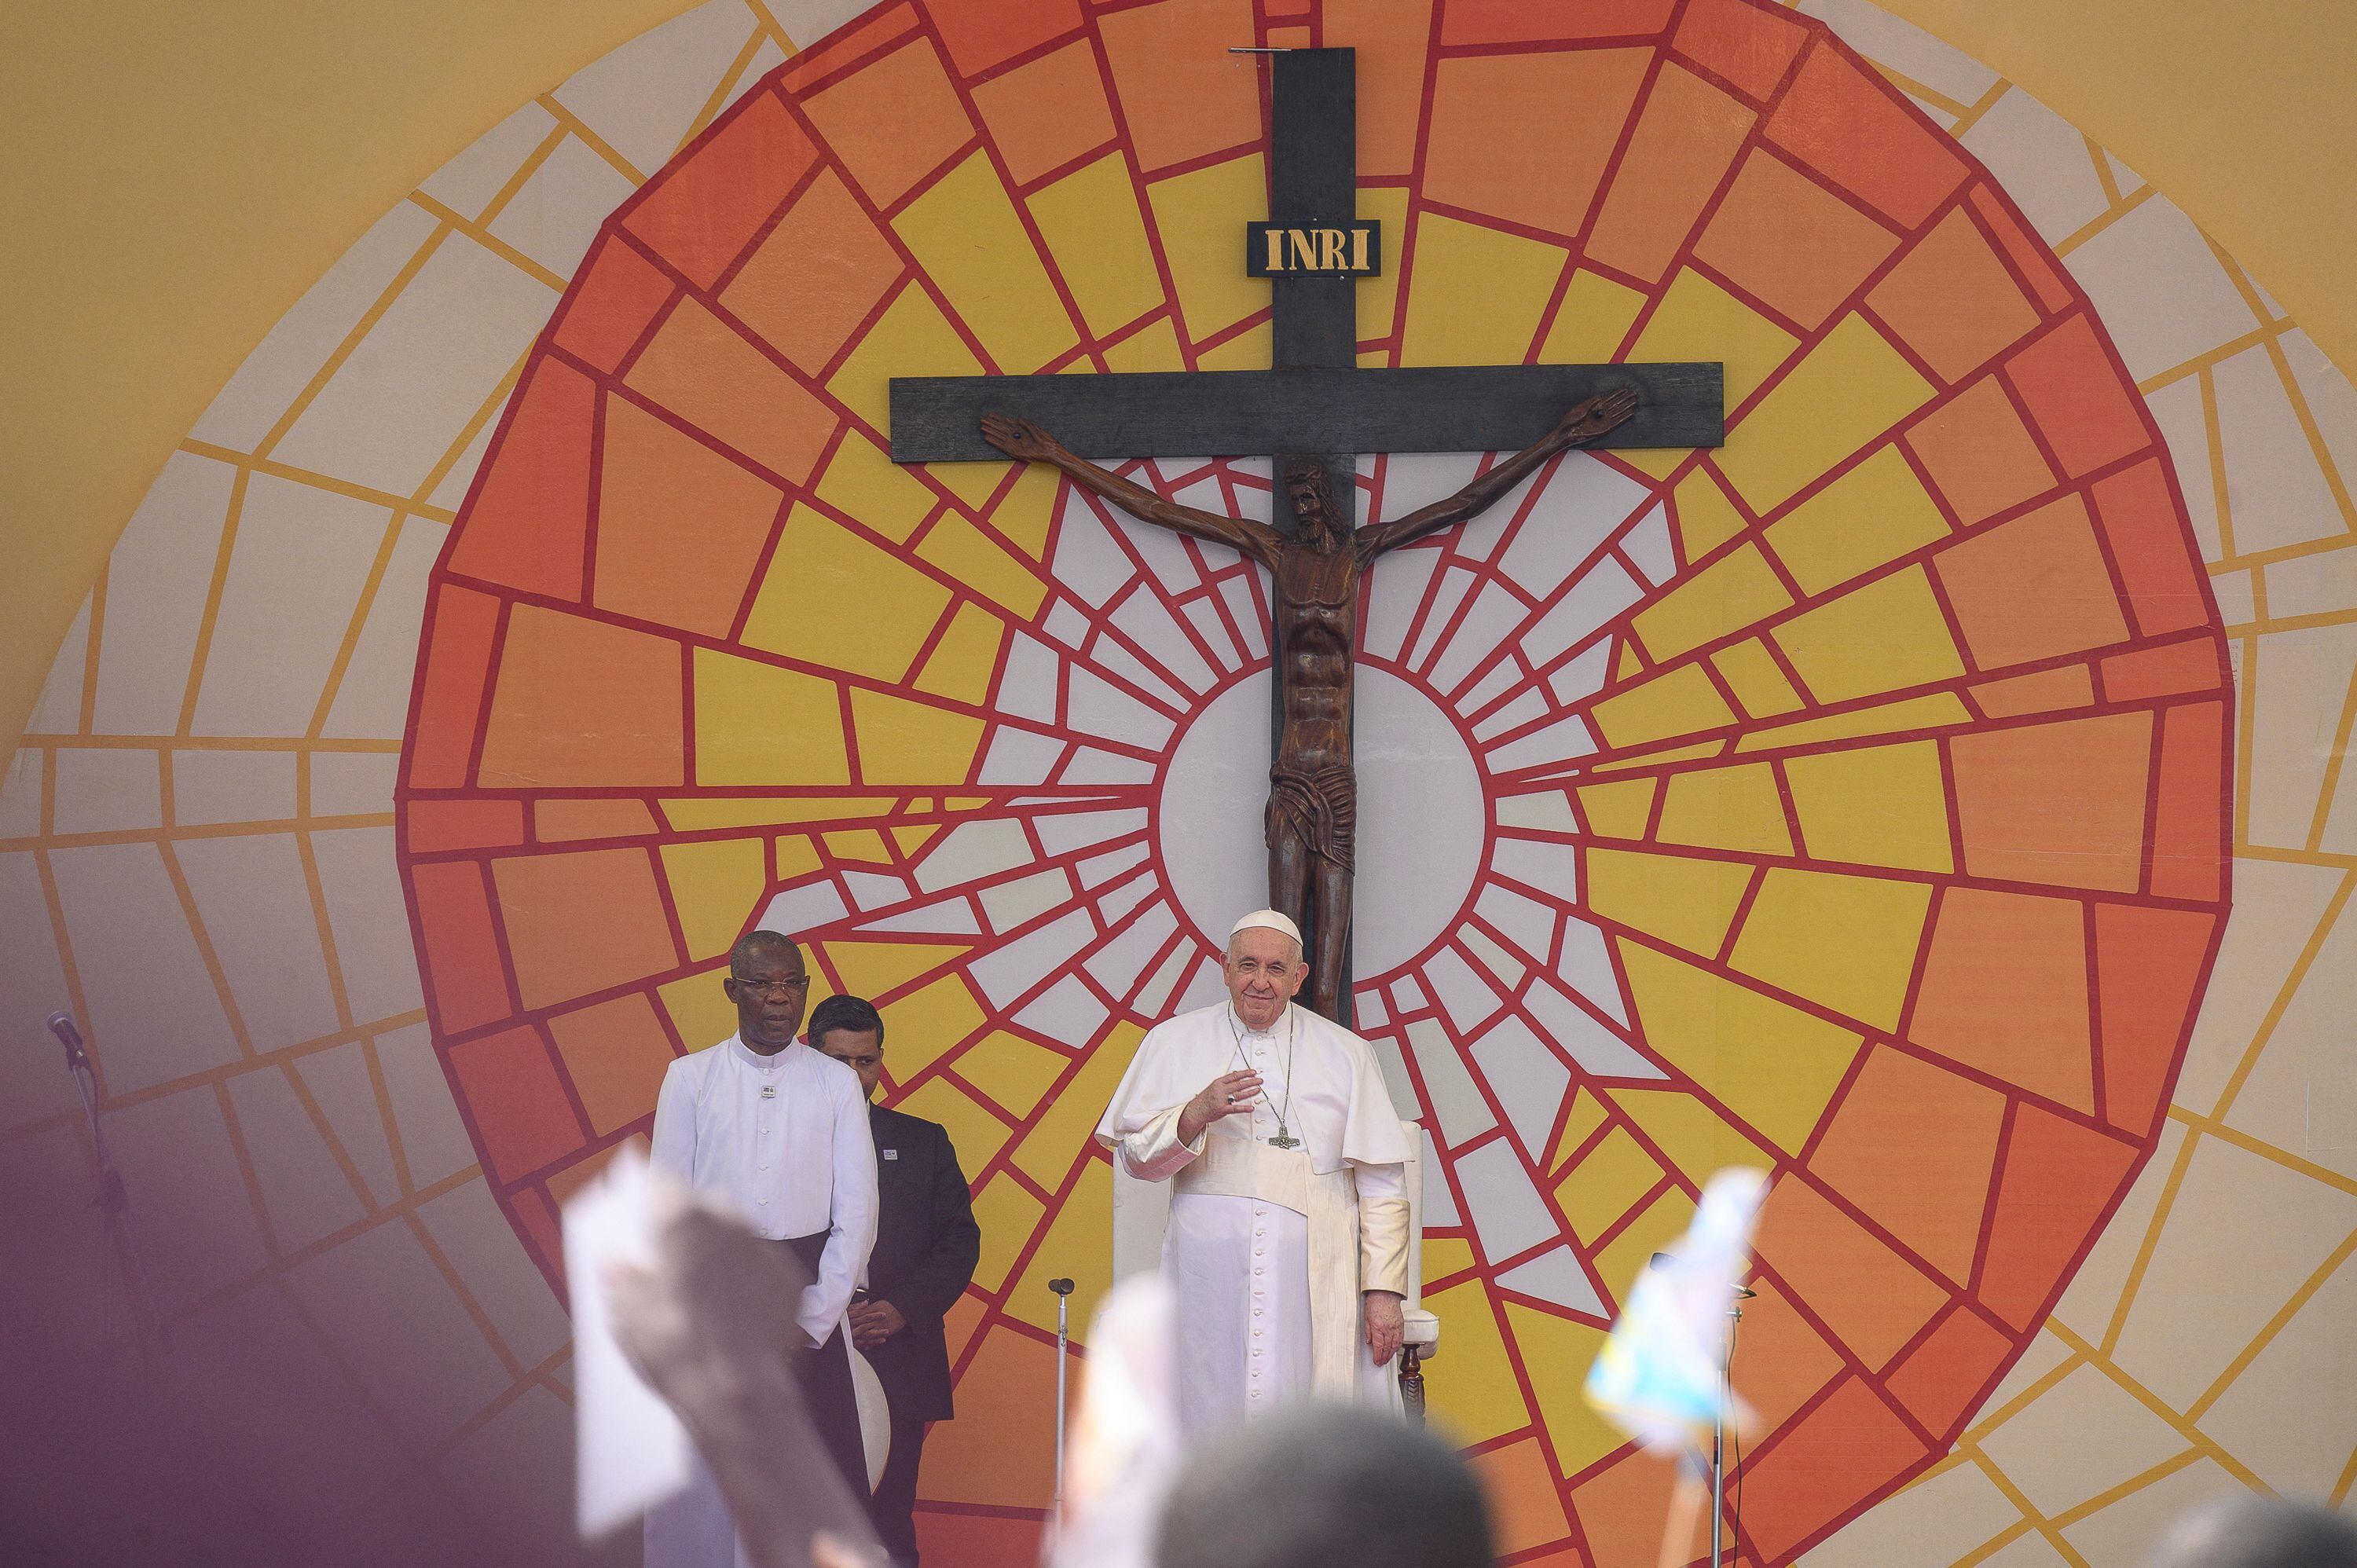 El papa Francisco gesticula durante la ceremonia celebrada en el Estadio de los Mártires de Kinsasa, en la que se ha reunido con jóvenes y catequistas, este jueves 2 de febrero.